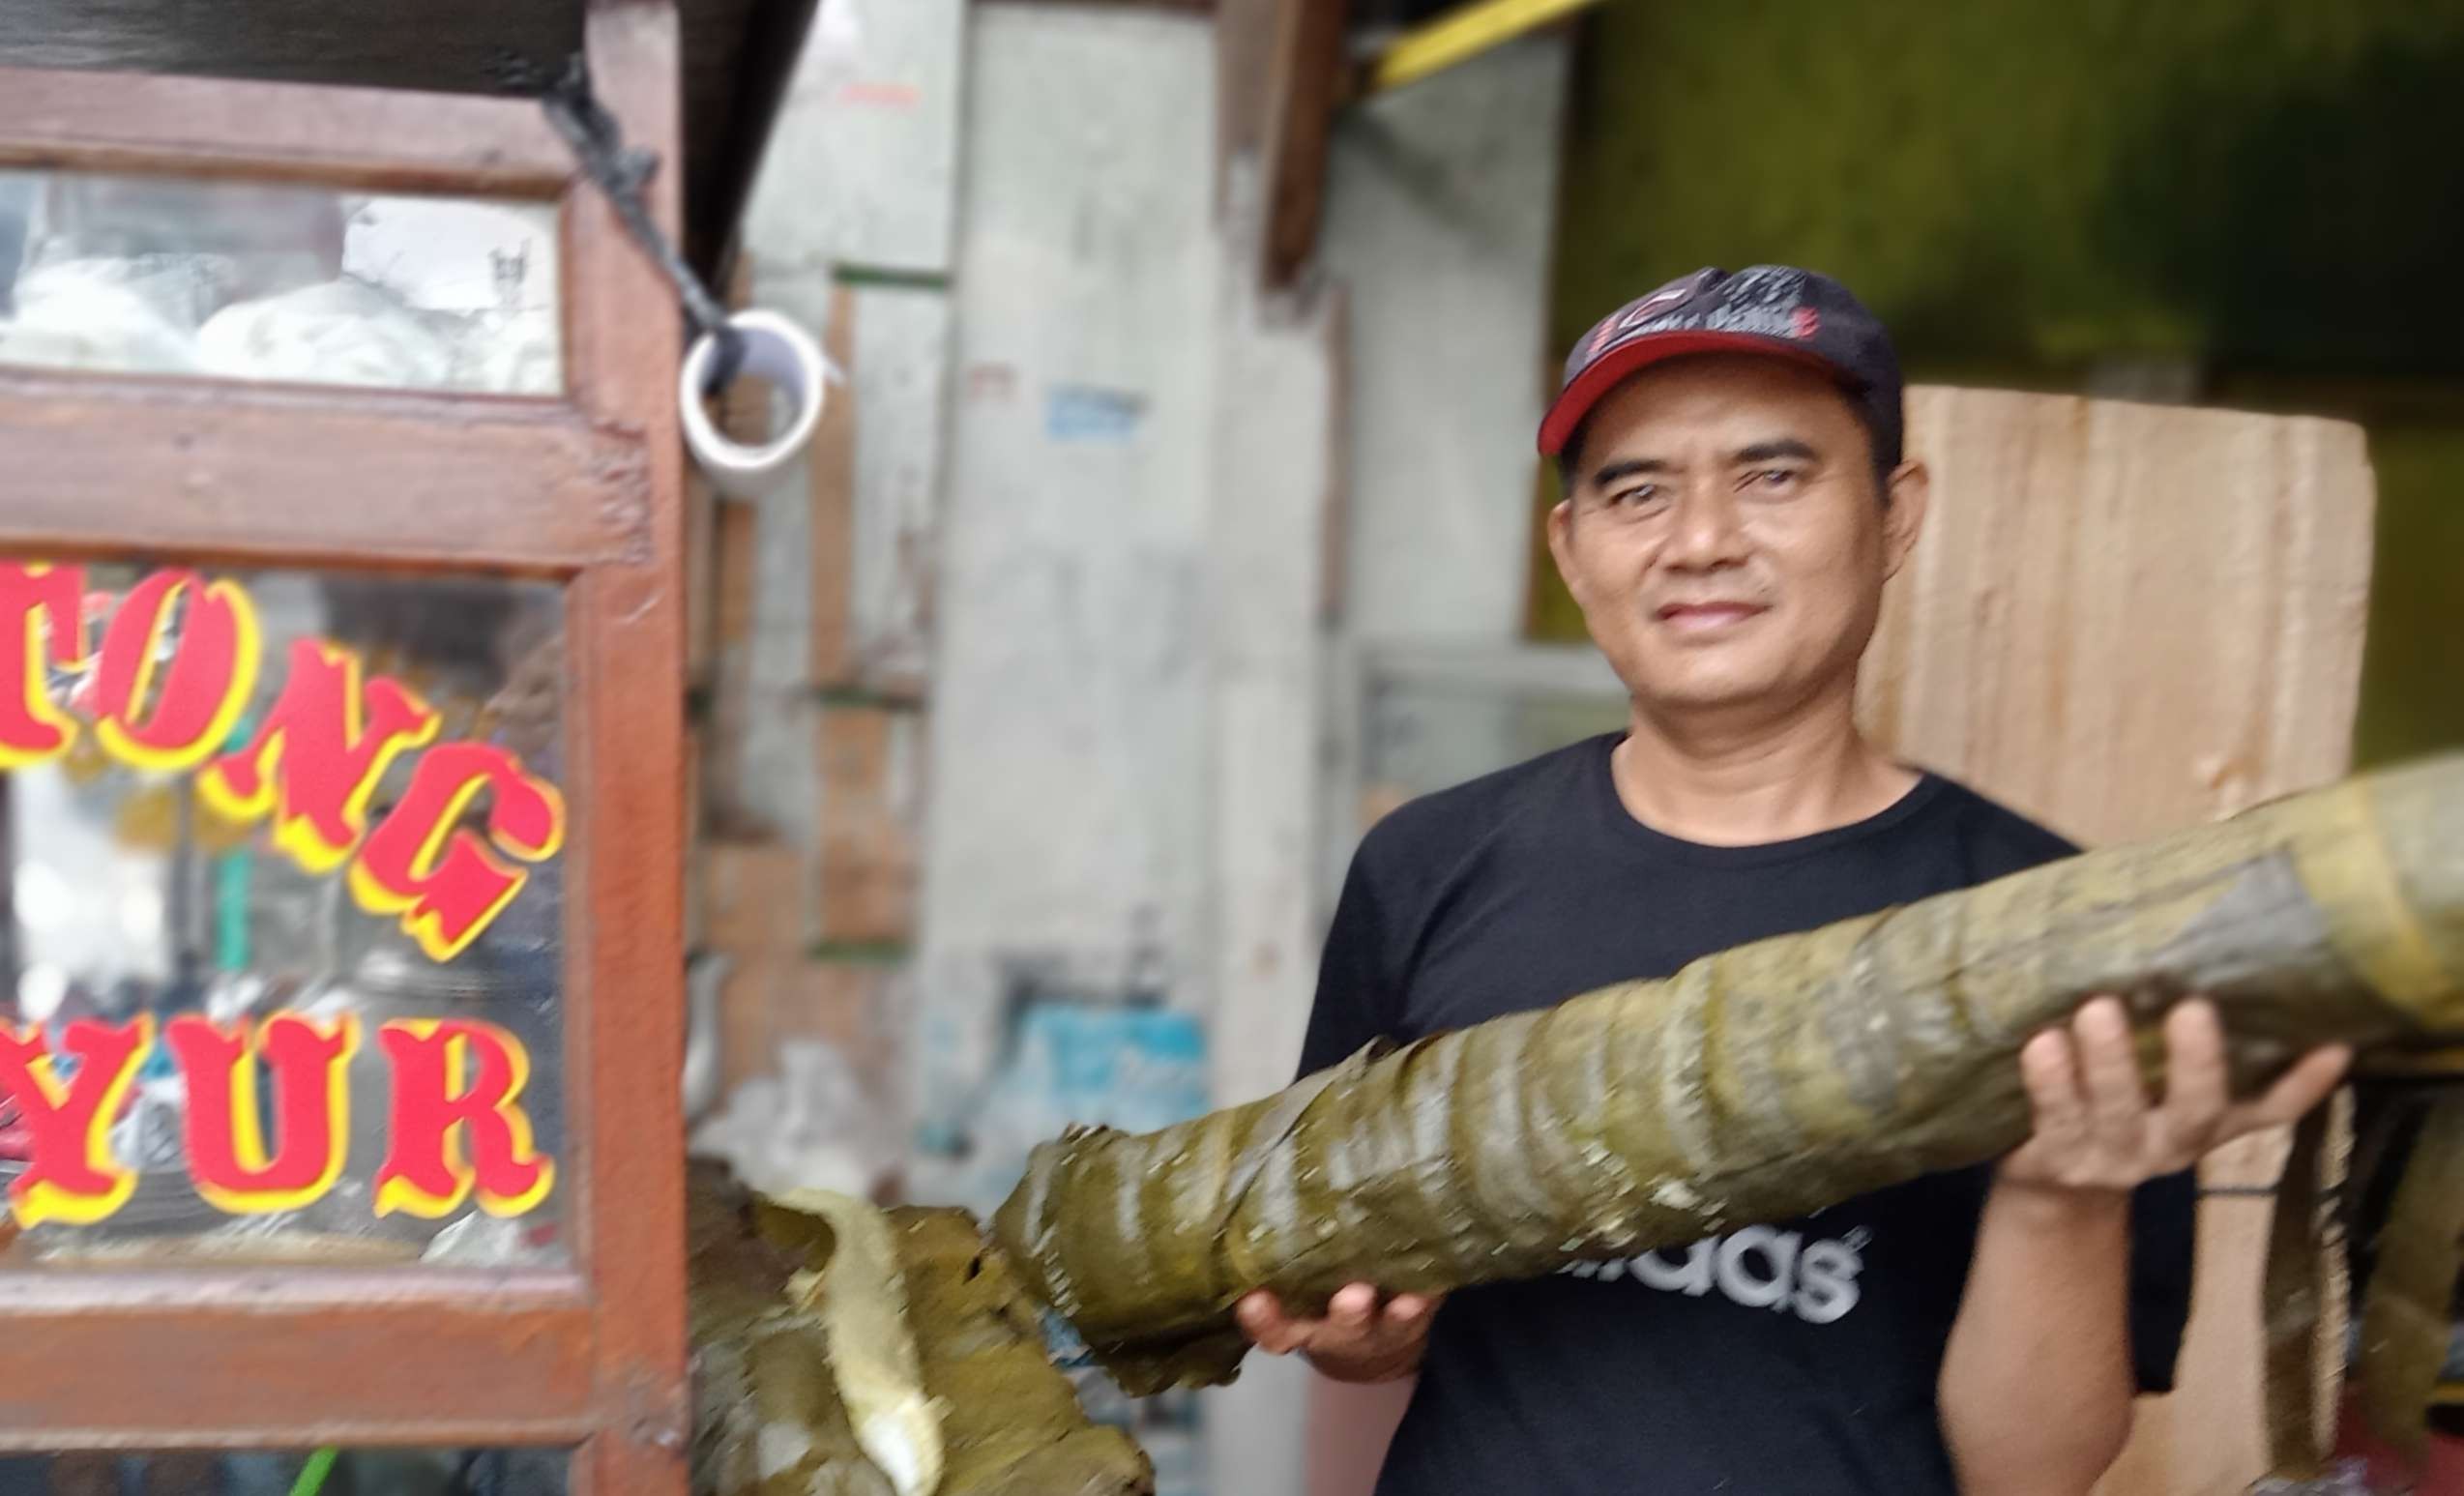 Pedagang lontong sayur Garut Asep memamerkan lontongnya yang segede tiang listrik. (Foto: Asmanu Sudharso/Ngopibareng.id)